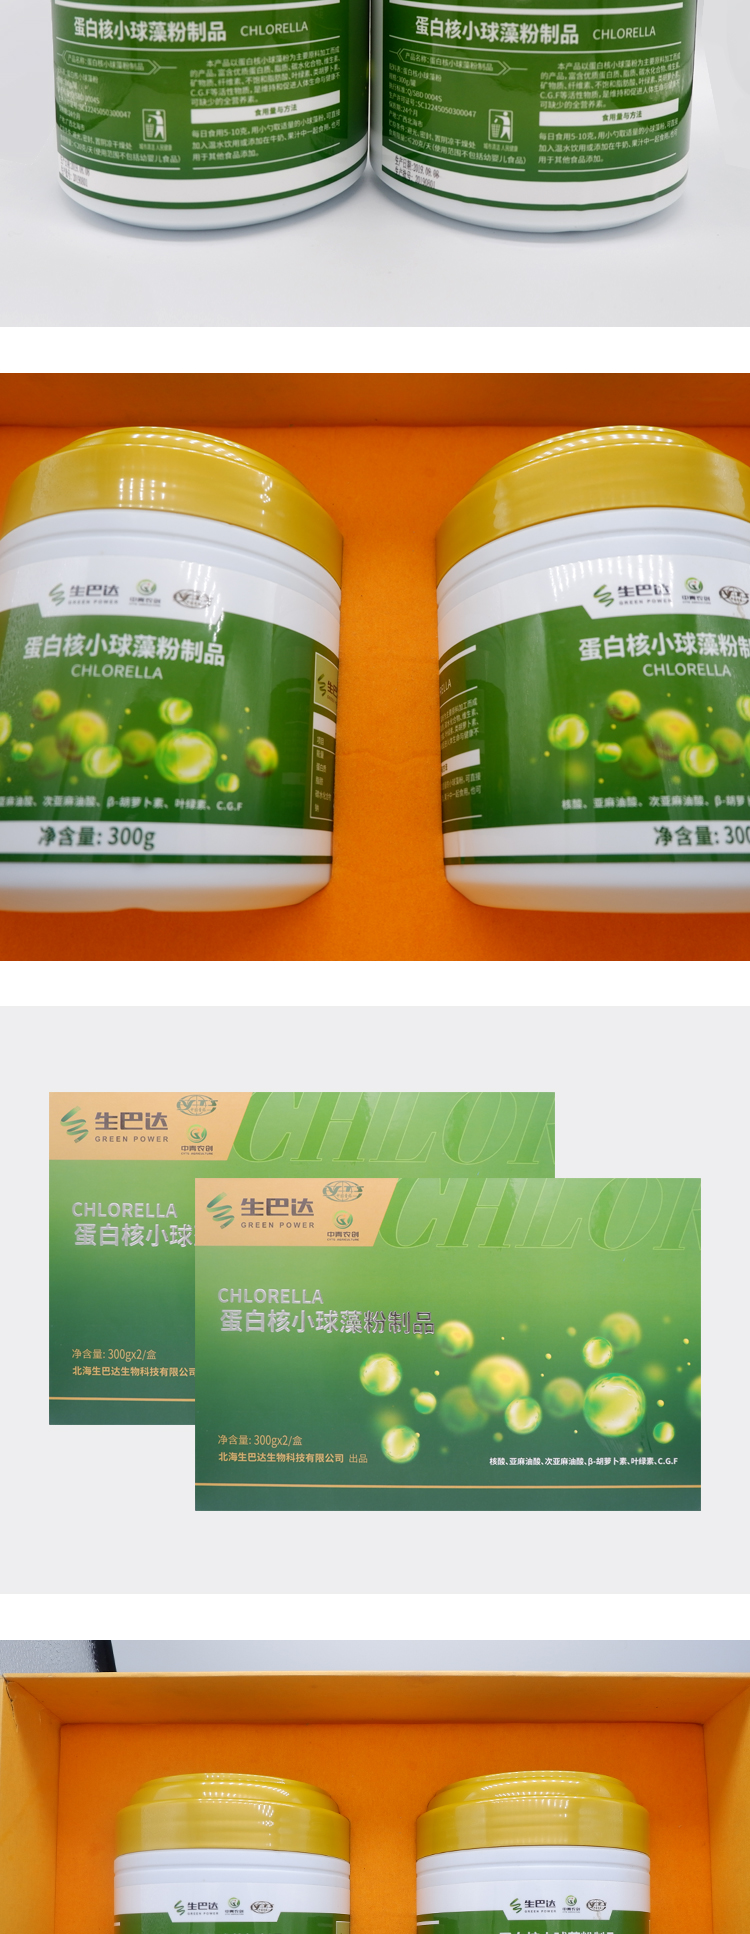 生巴达蛋白核小球藻粉制品300g/罐*2罐/盒示例图5